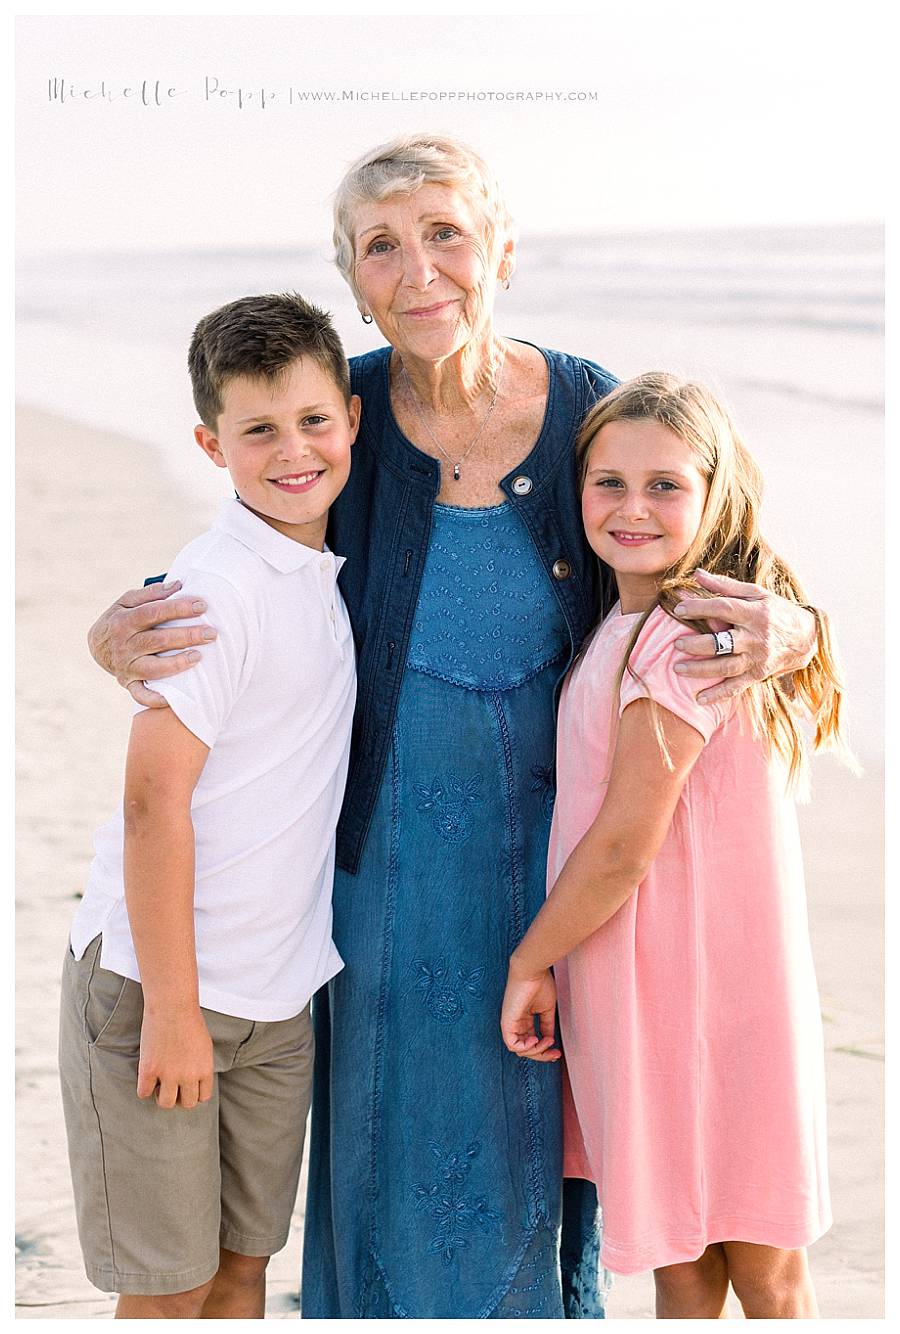 grandma hugging two kids at beach